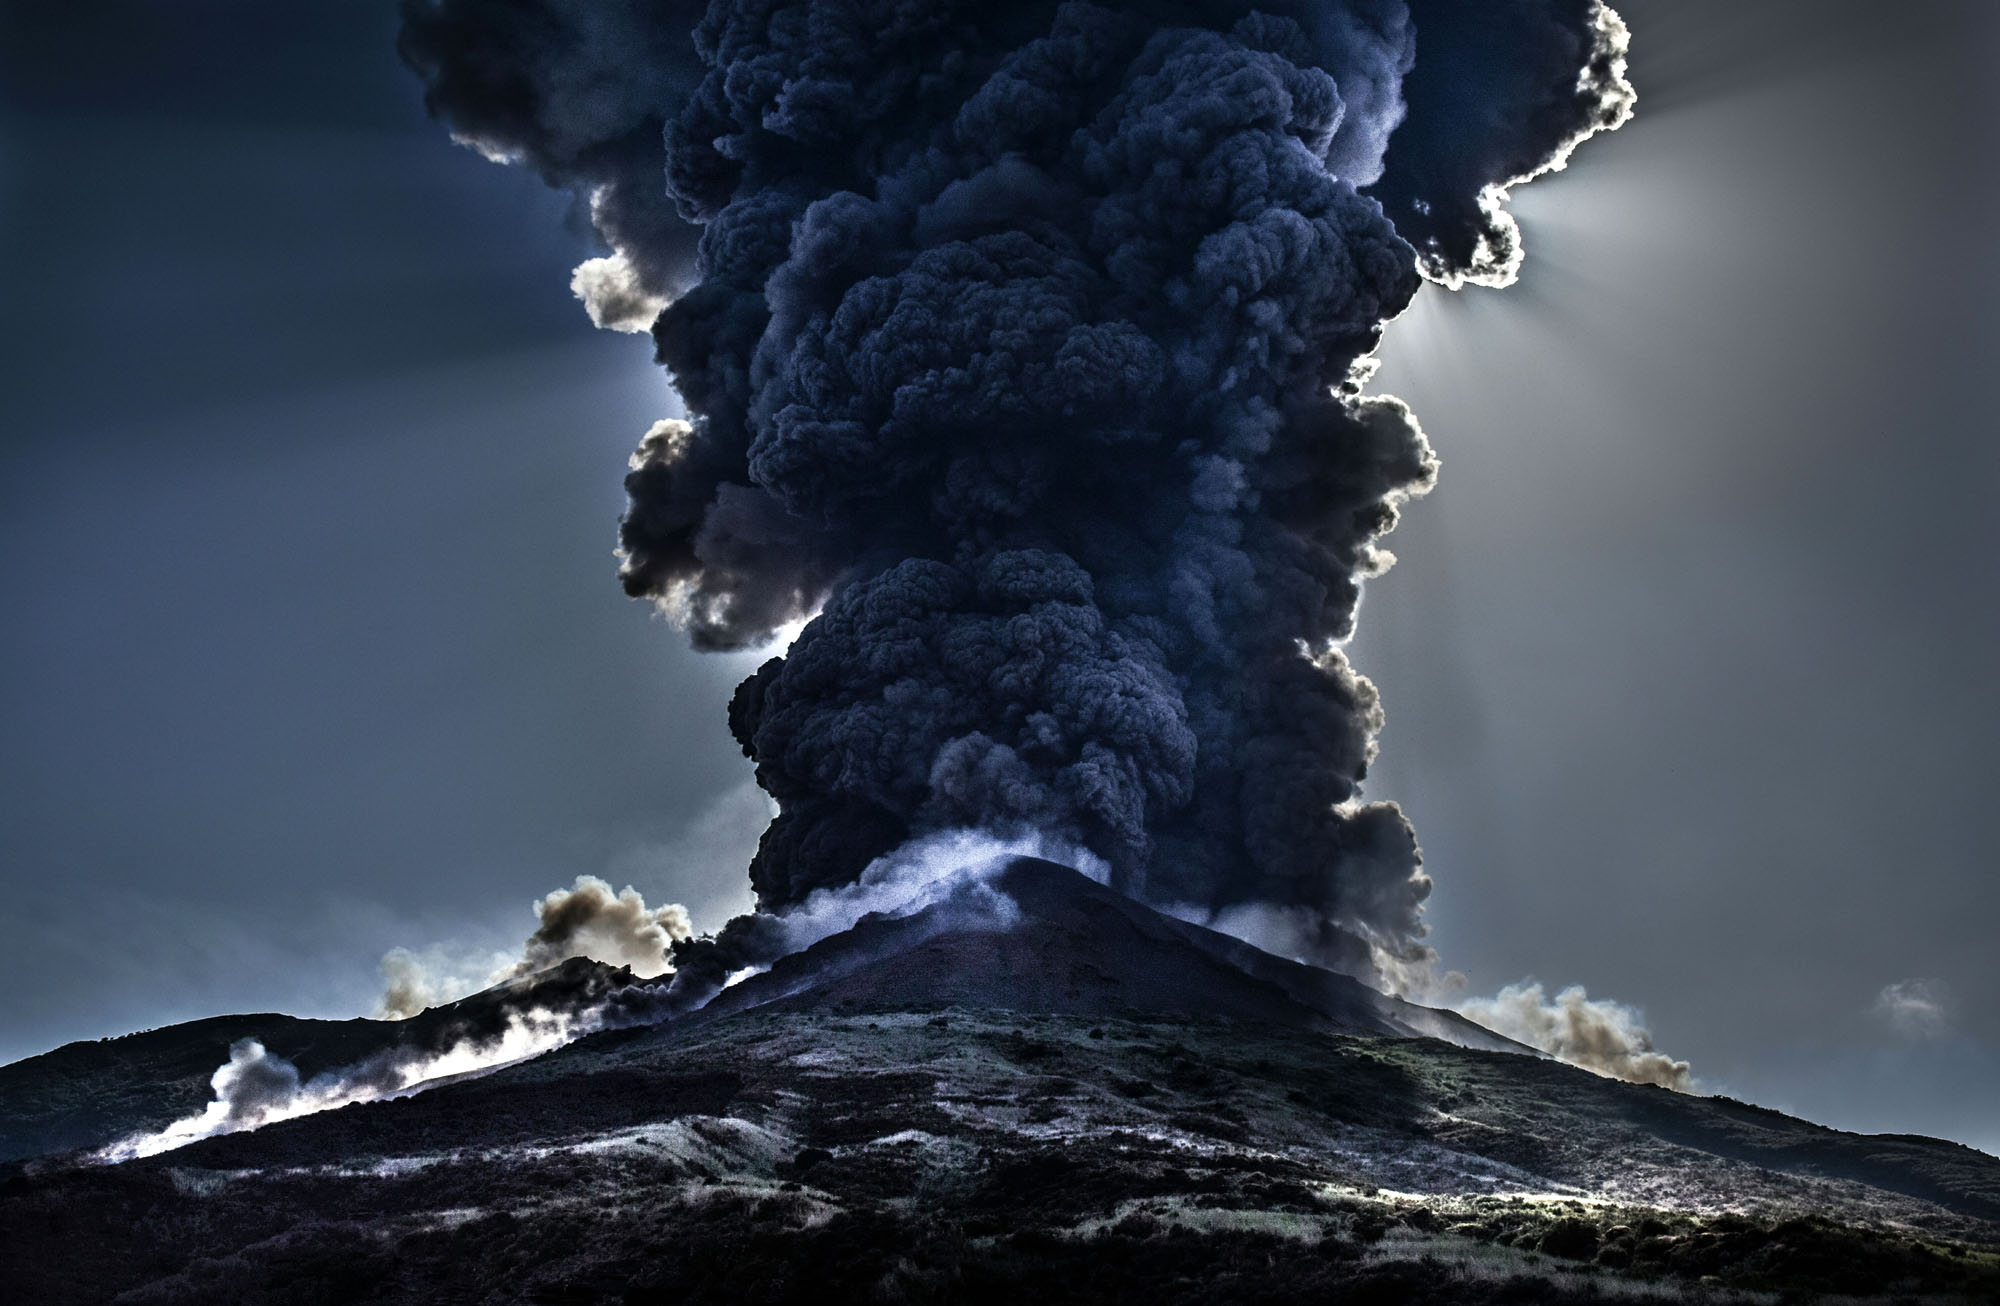 日本火山又喷发了!烟柱冲上1500米高空,富士山还安全吗?